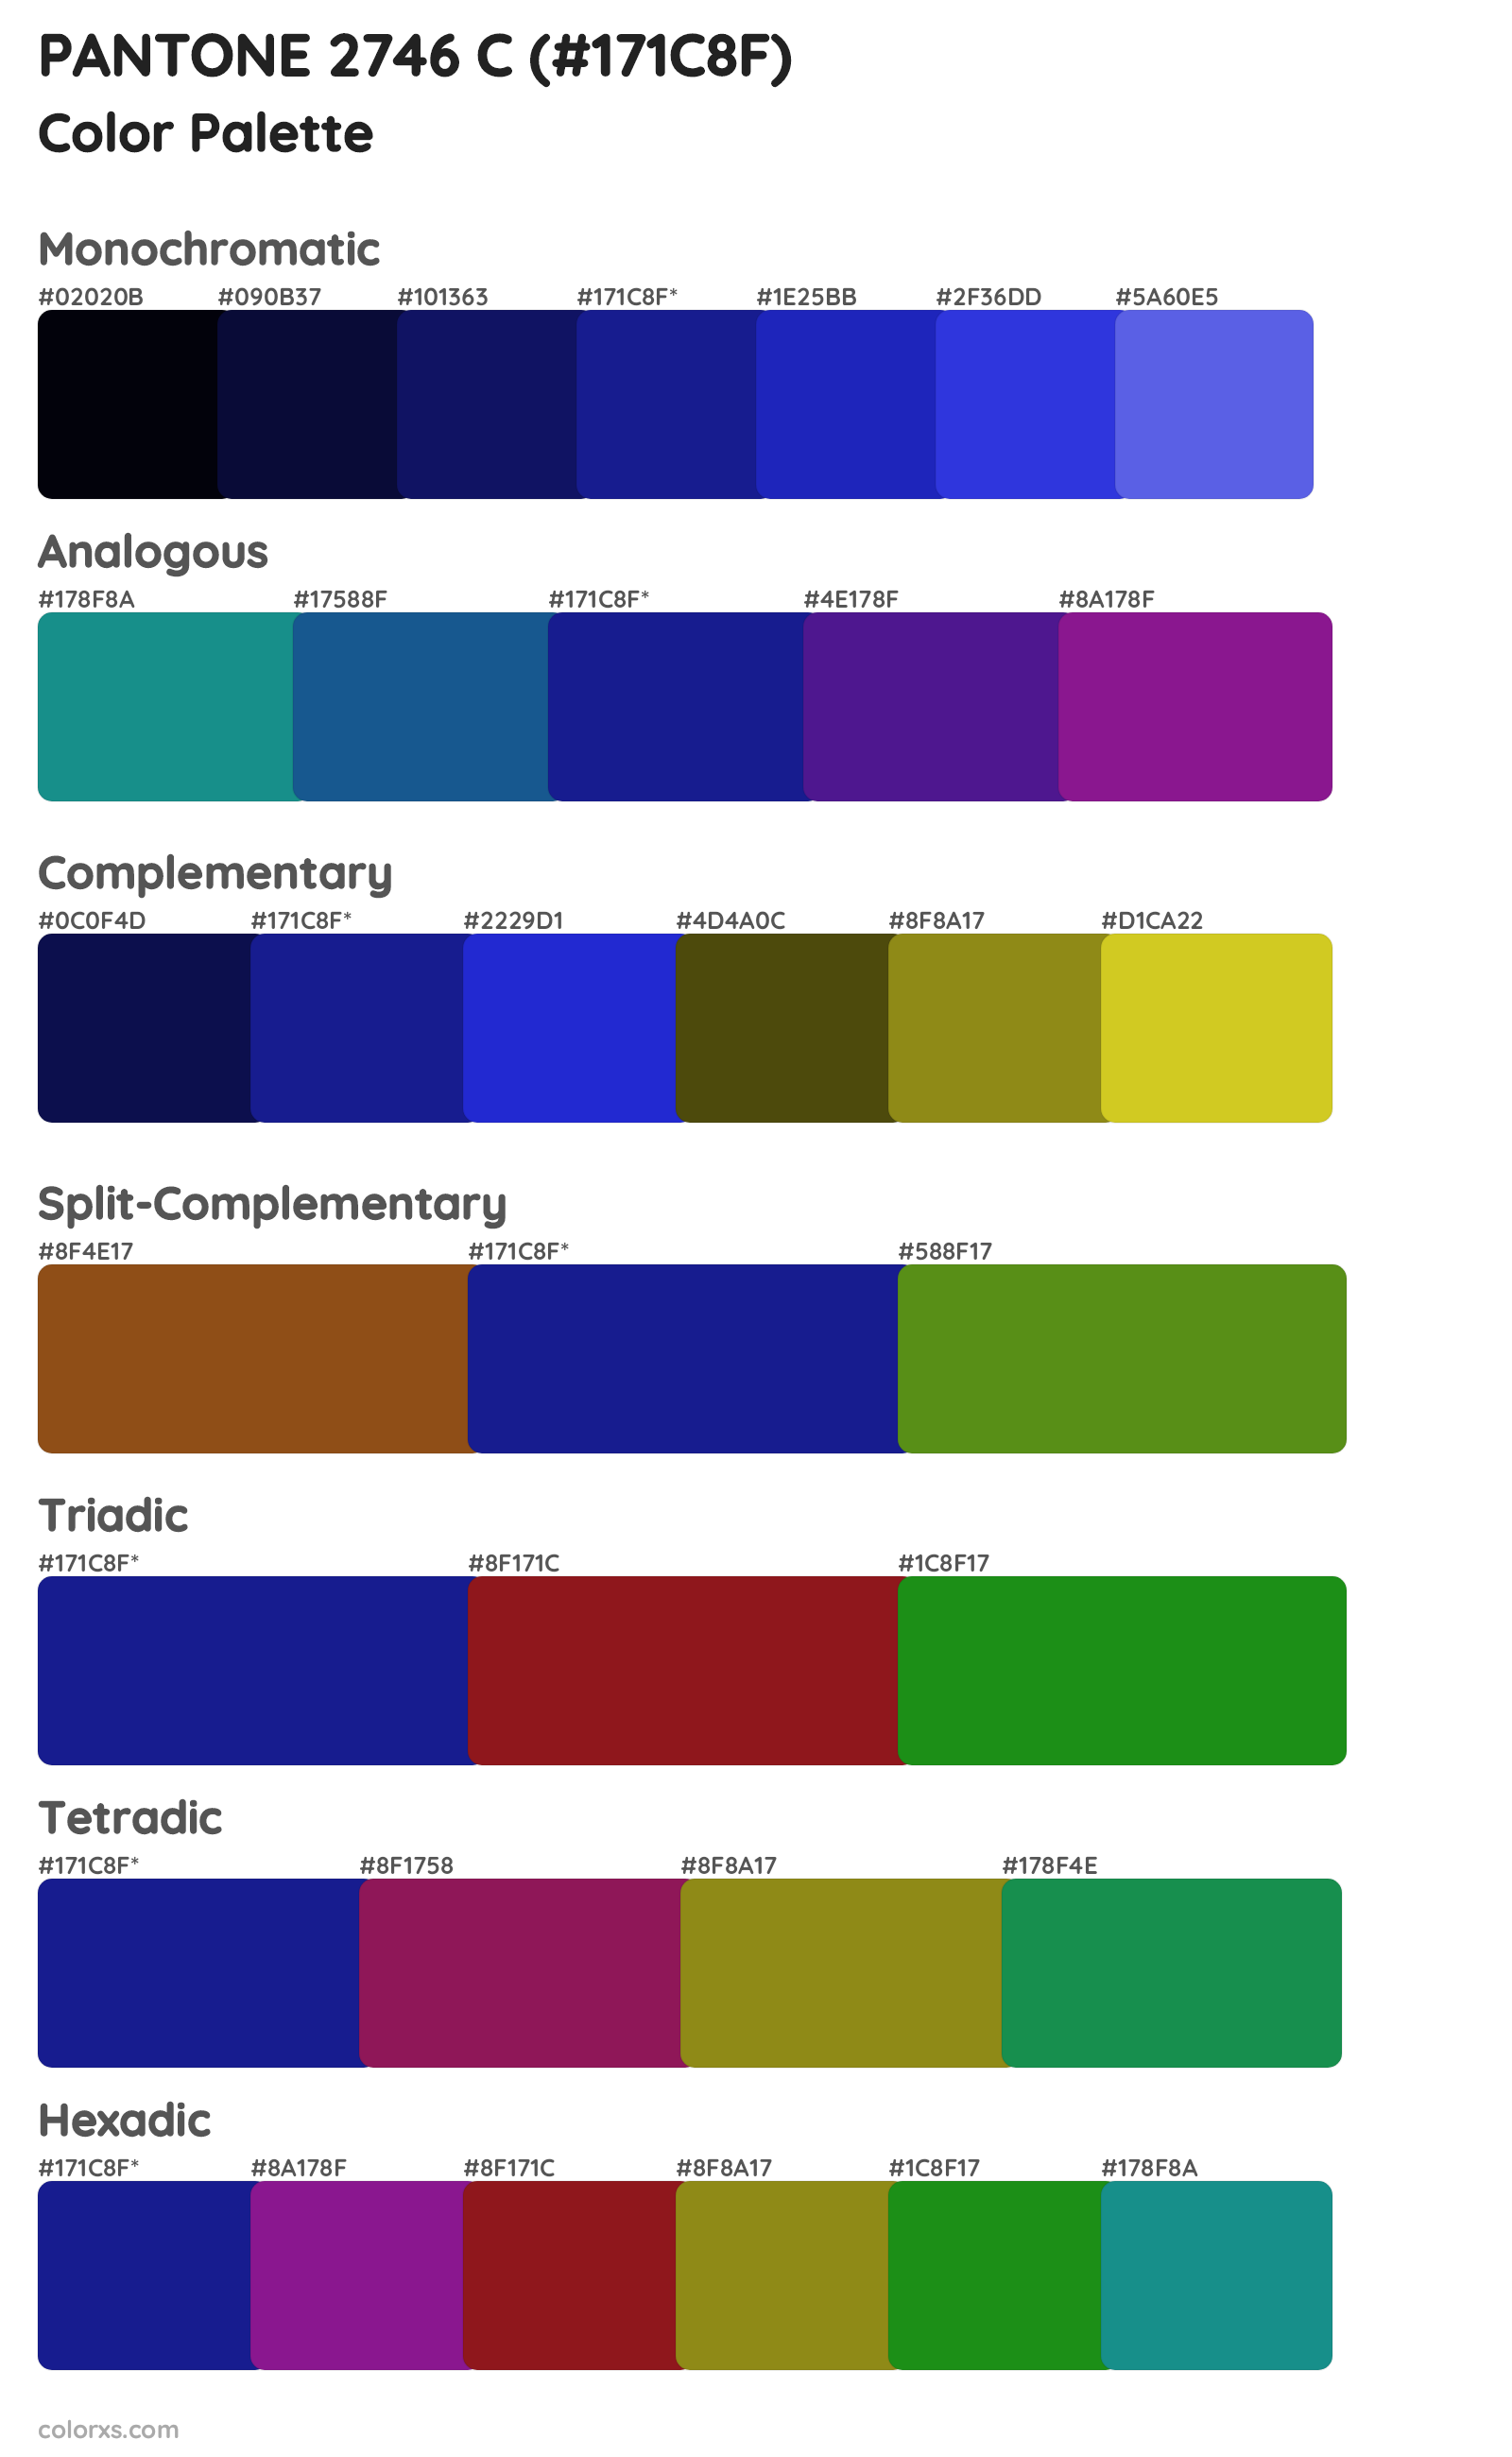 PANTONE 2746 C Color Scheme Palettes